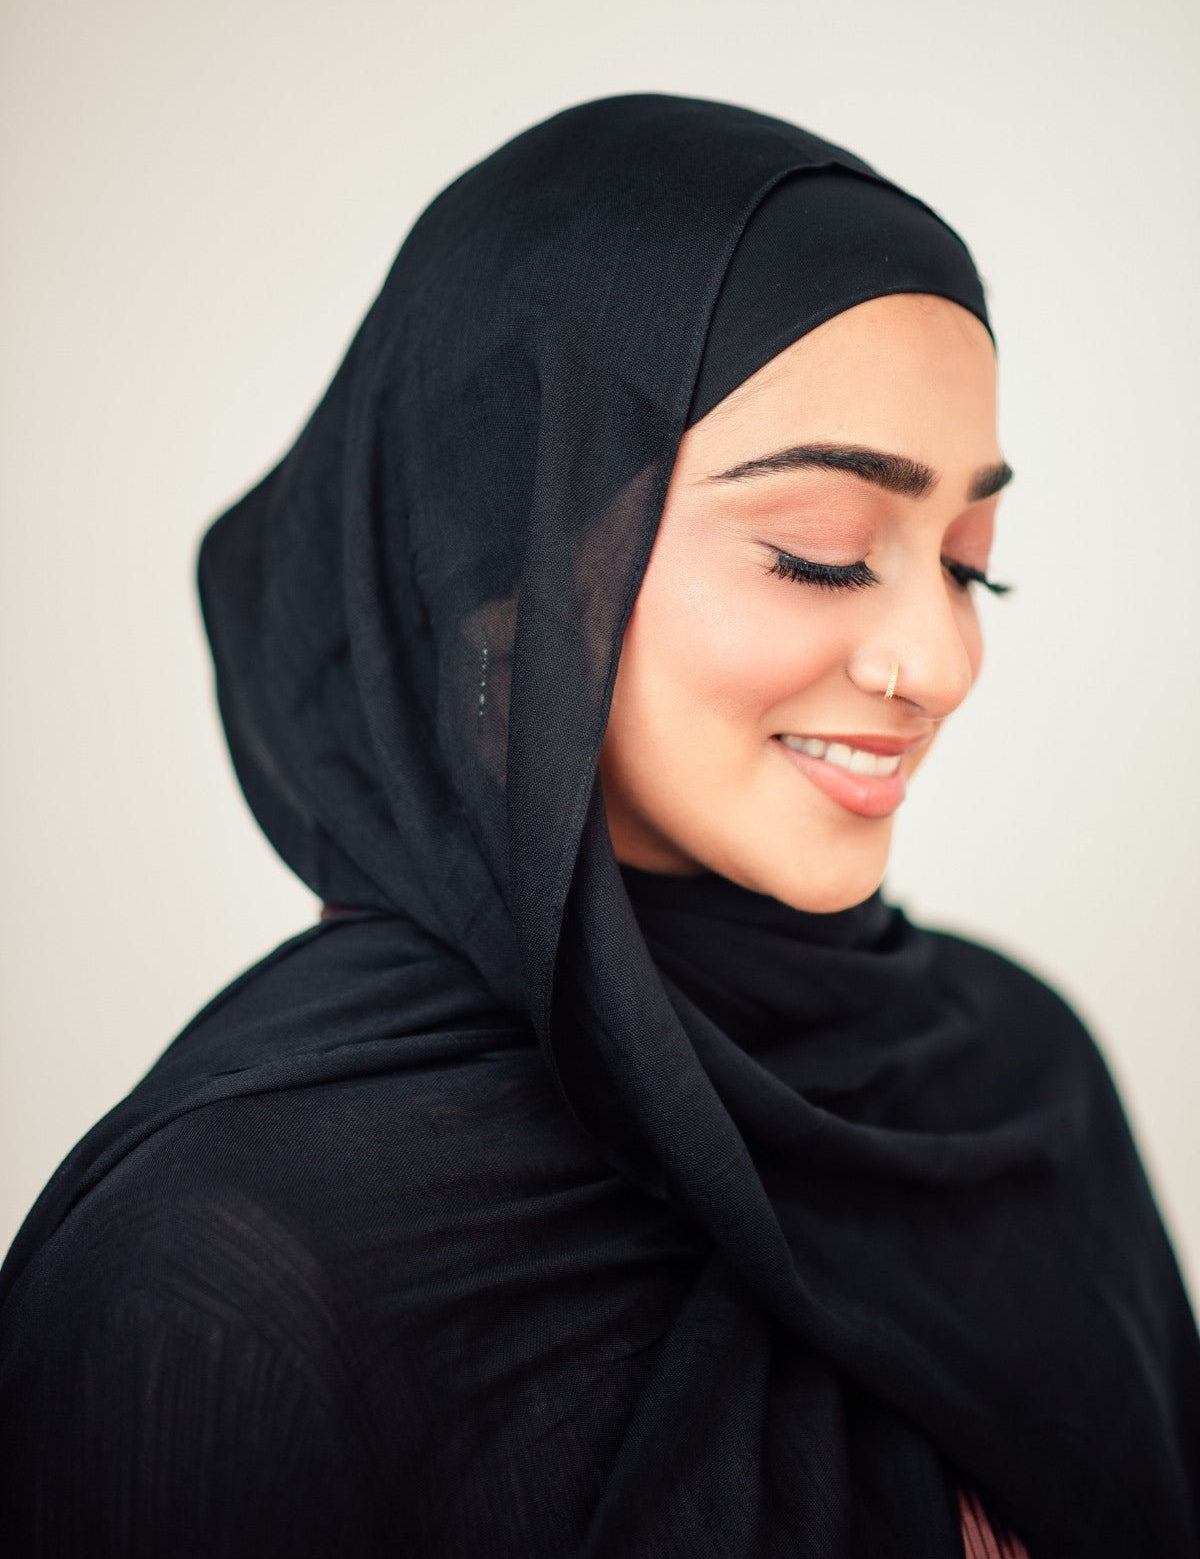 Bamboo Modal Hijab - Onyx - LuxHijabs